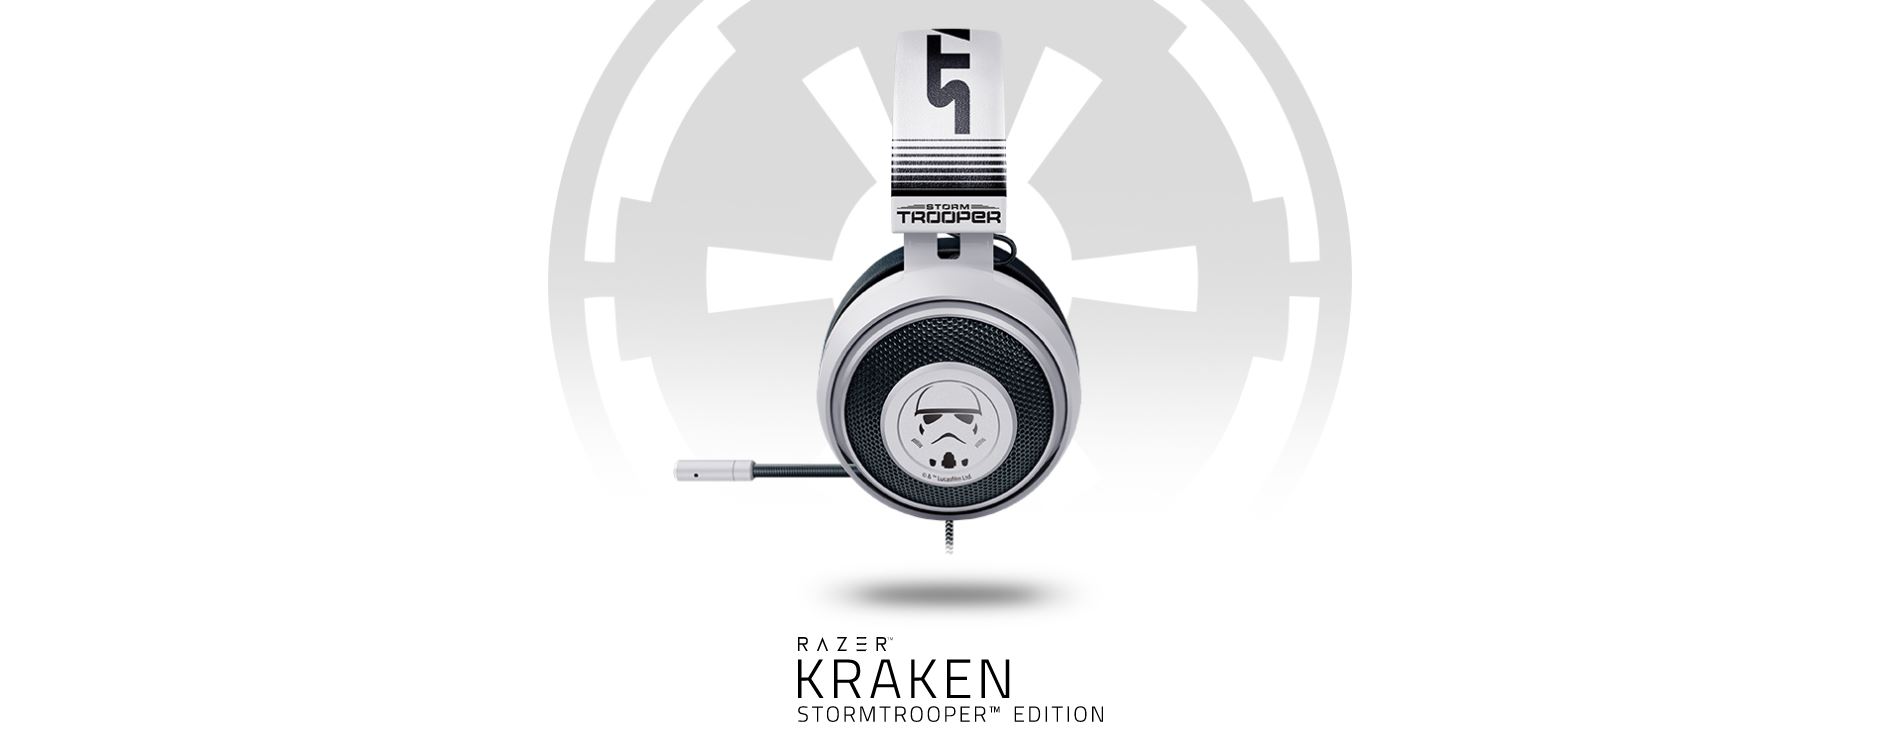 Prouvez votre allégance à l'Empire (Razer) avec le casque Kraken  Stormtrooper Edition